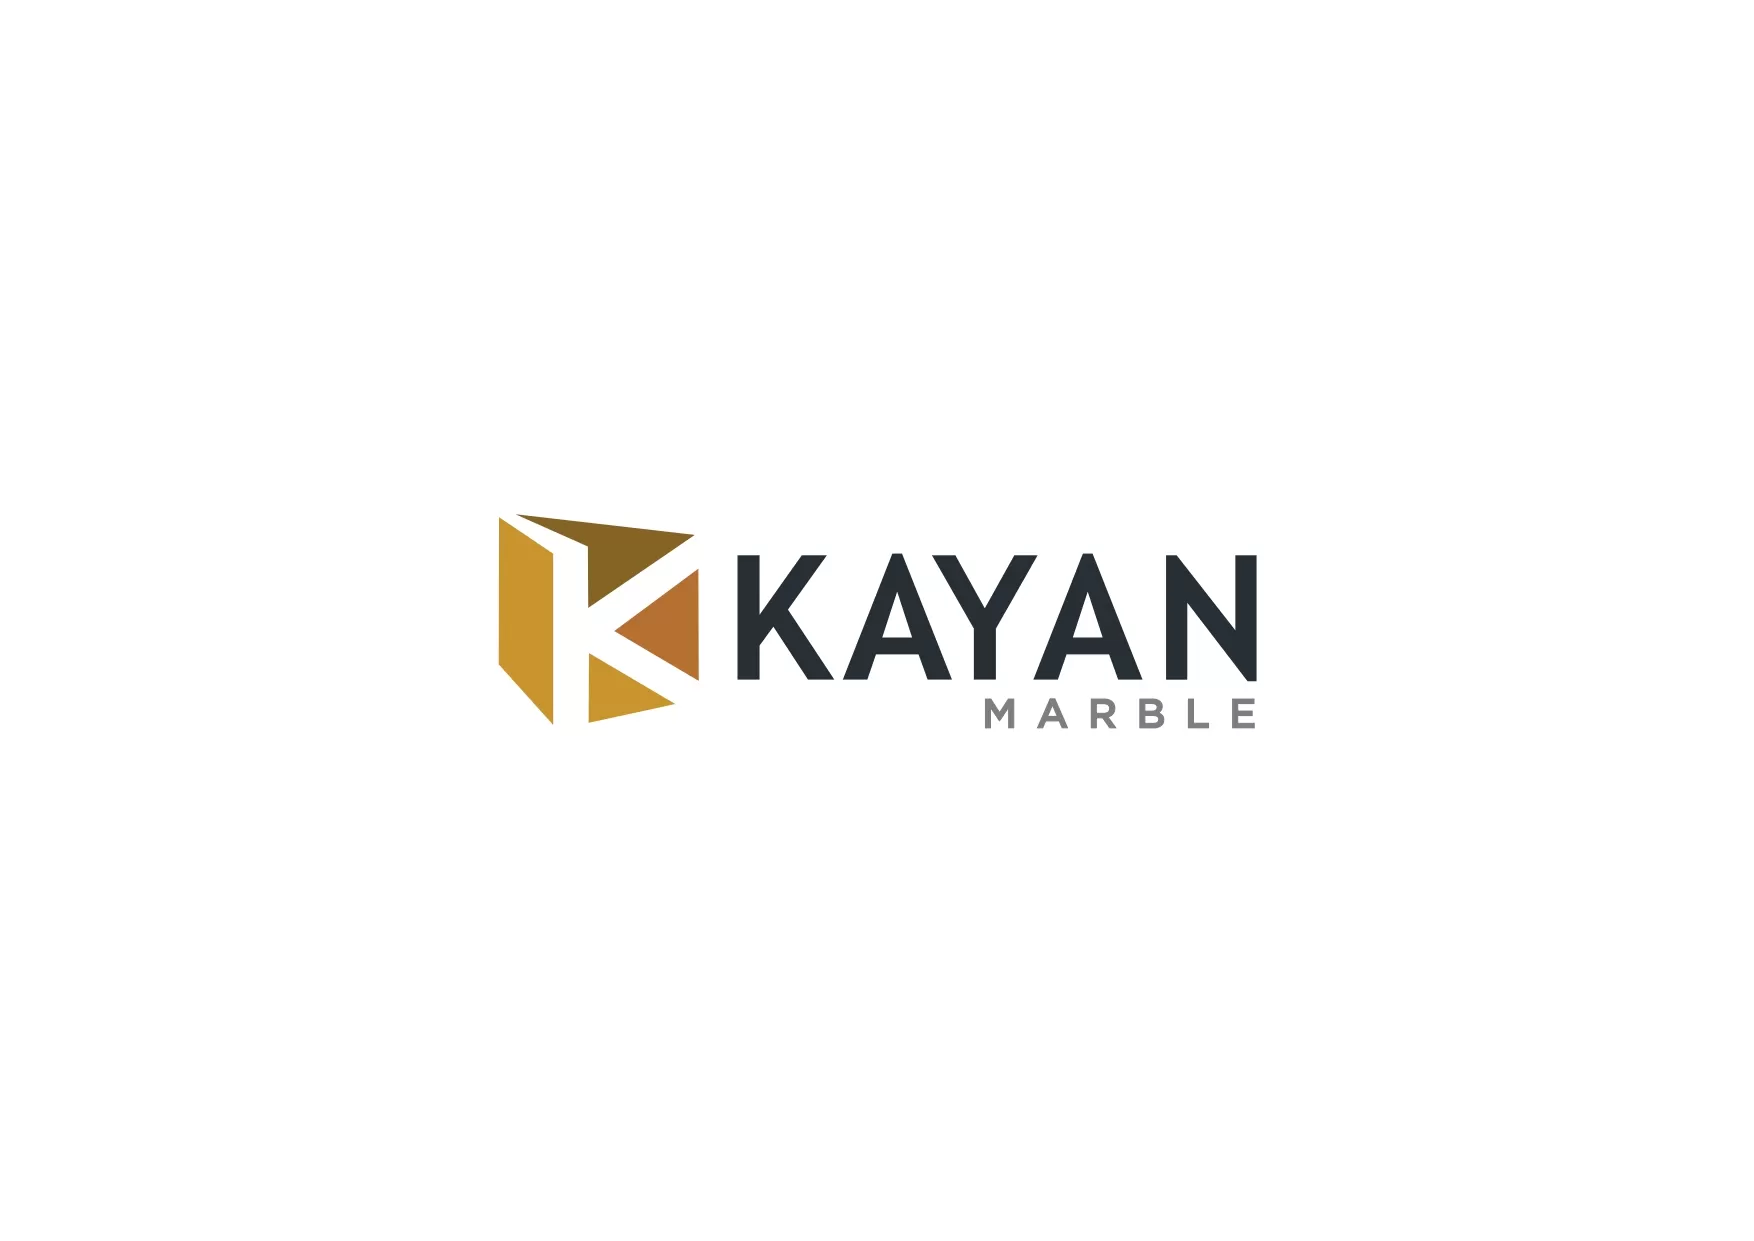 Kayan Marble